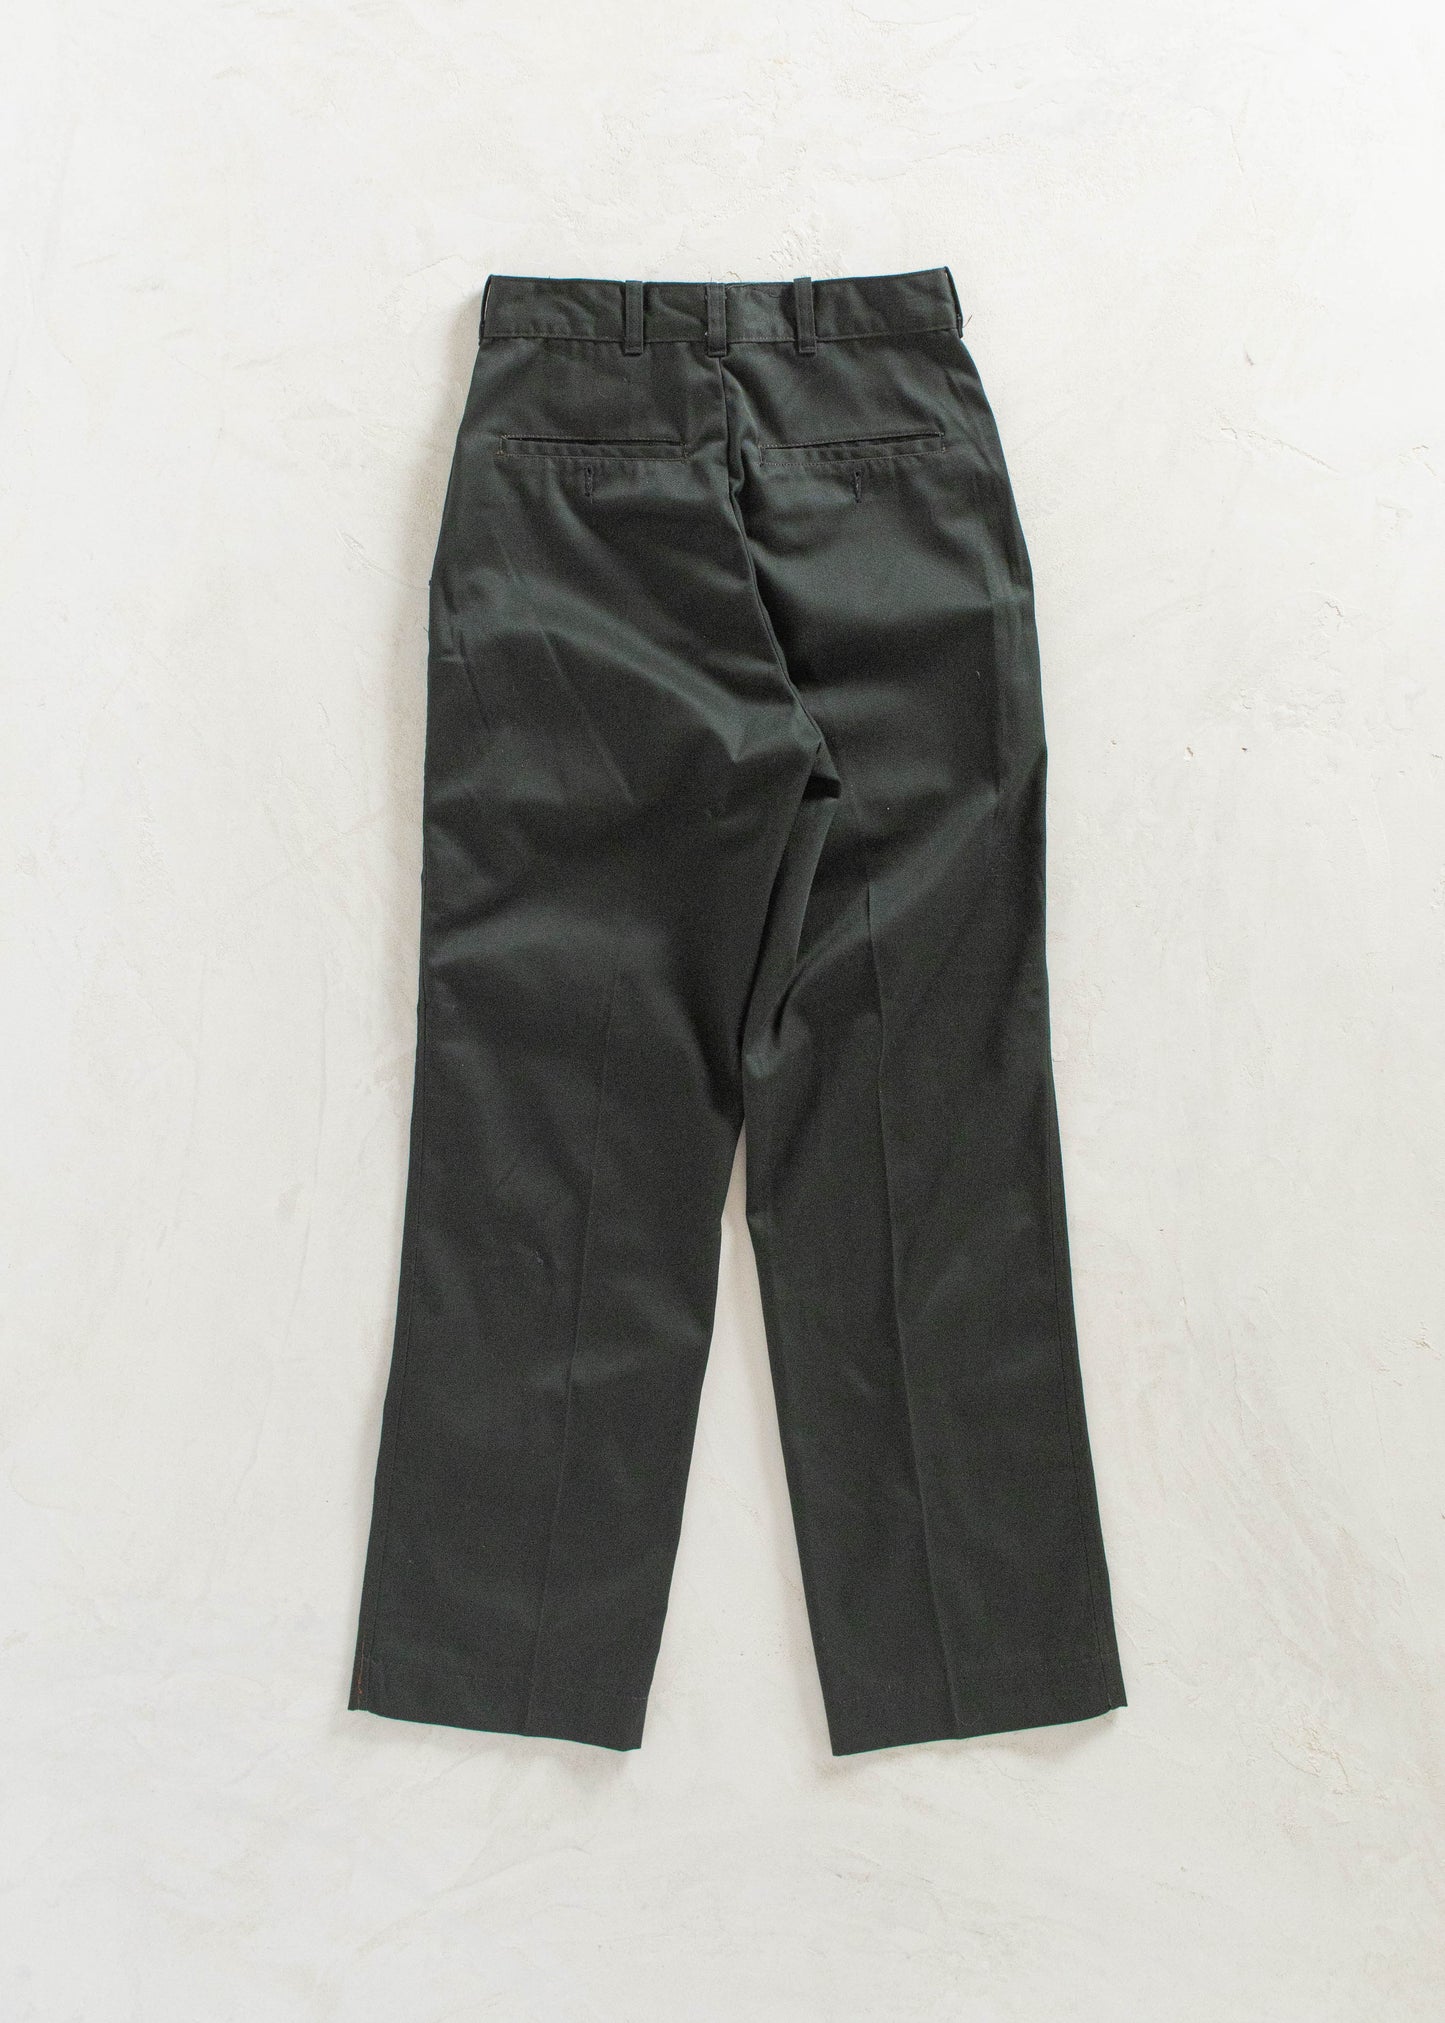 Vintage 1980s Military Cadet Pants Size Women's 26 Men's 30